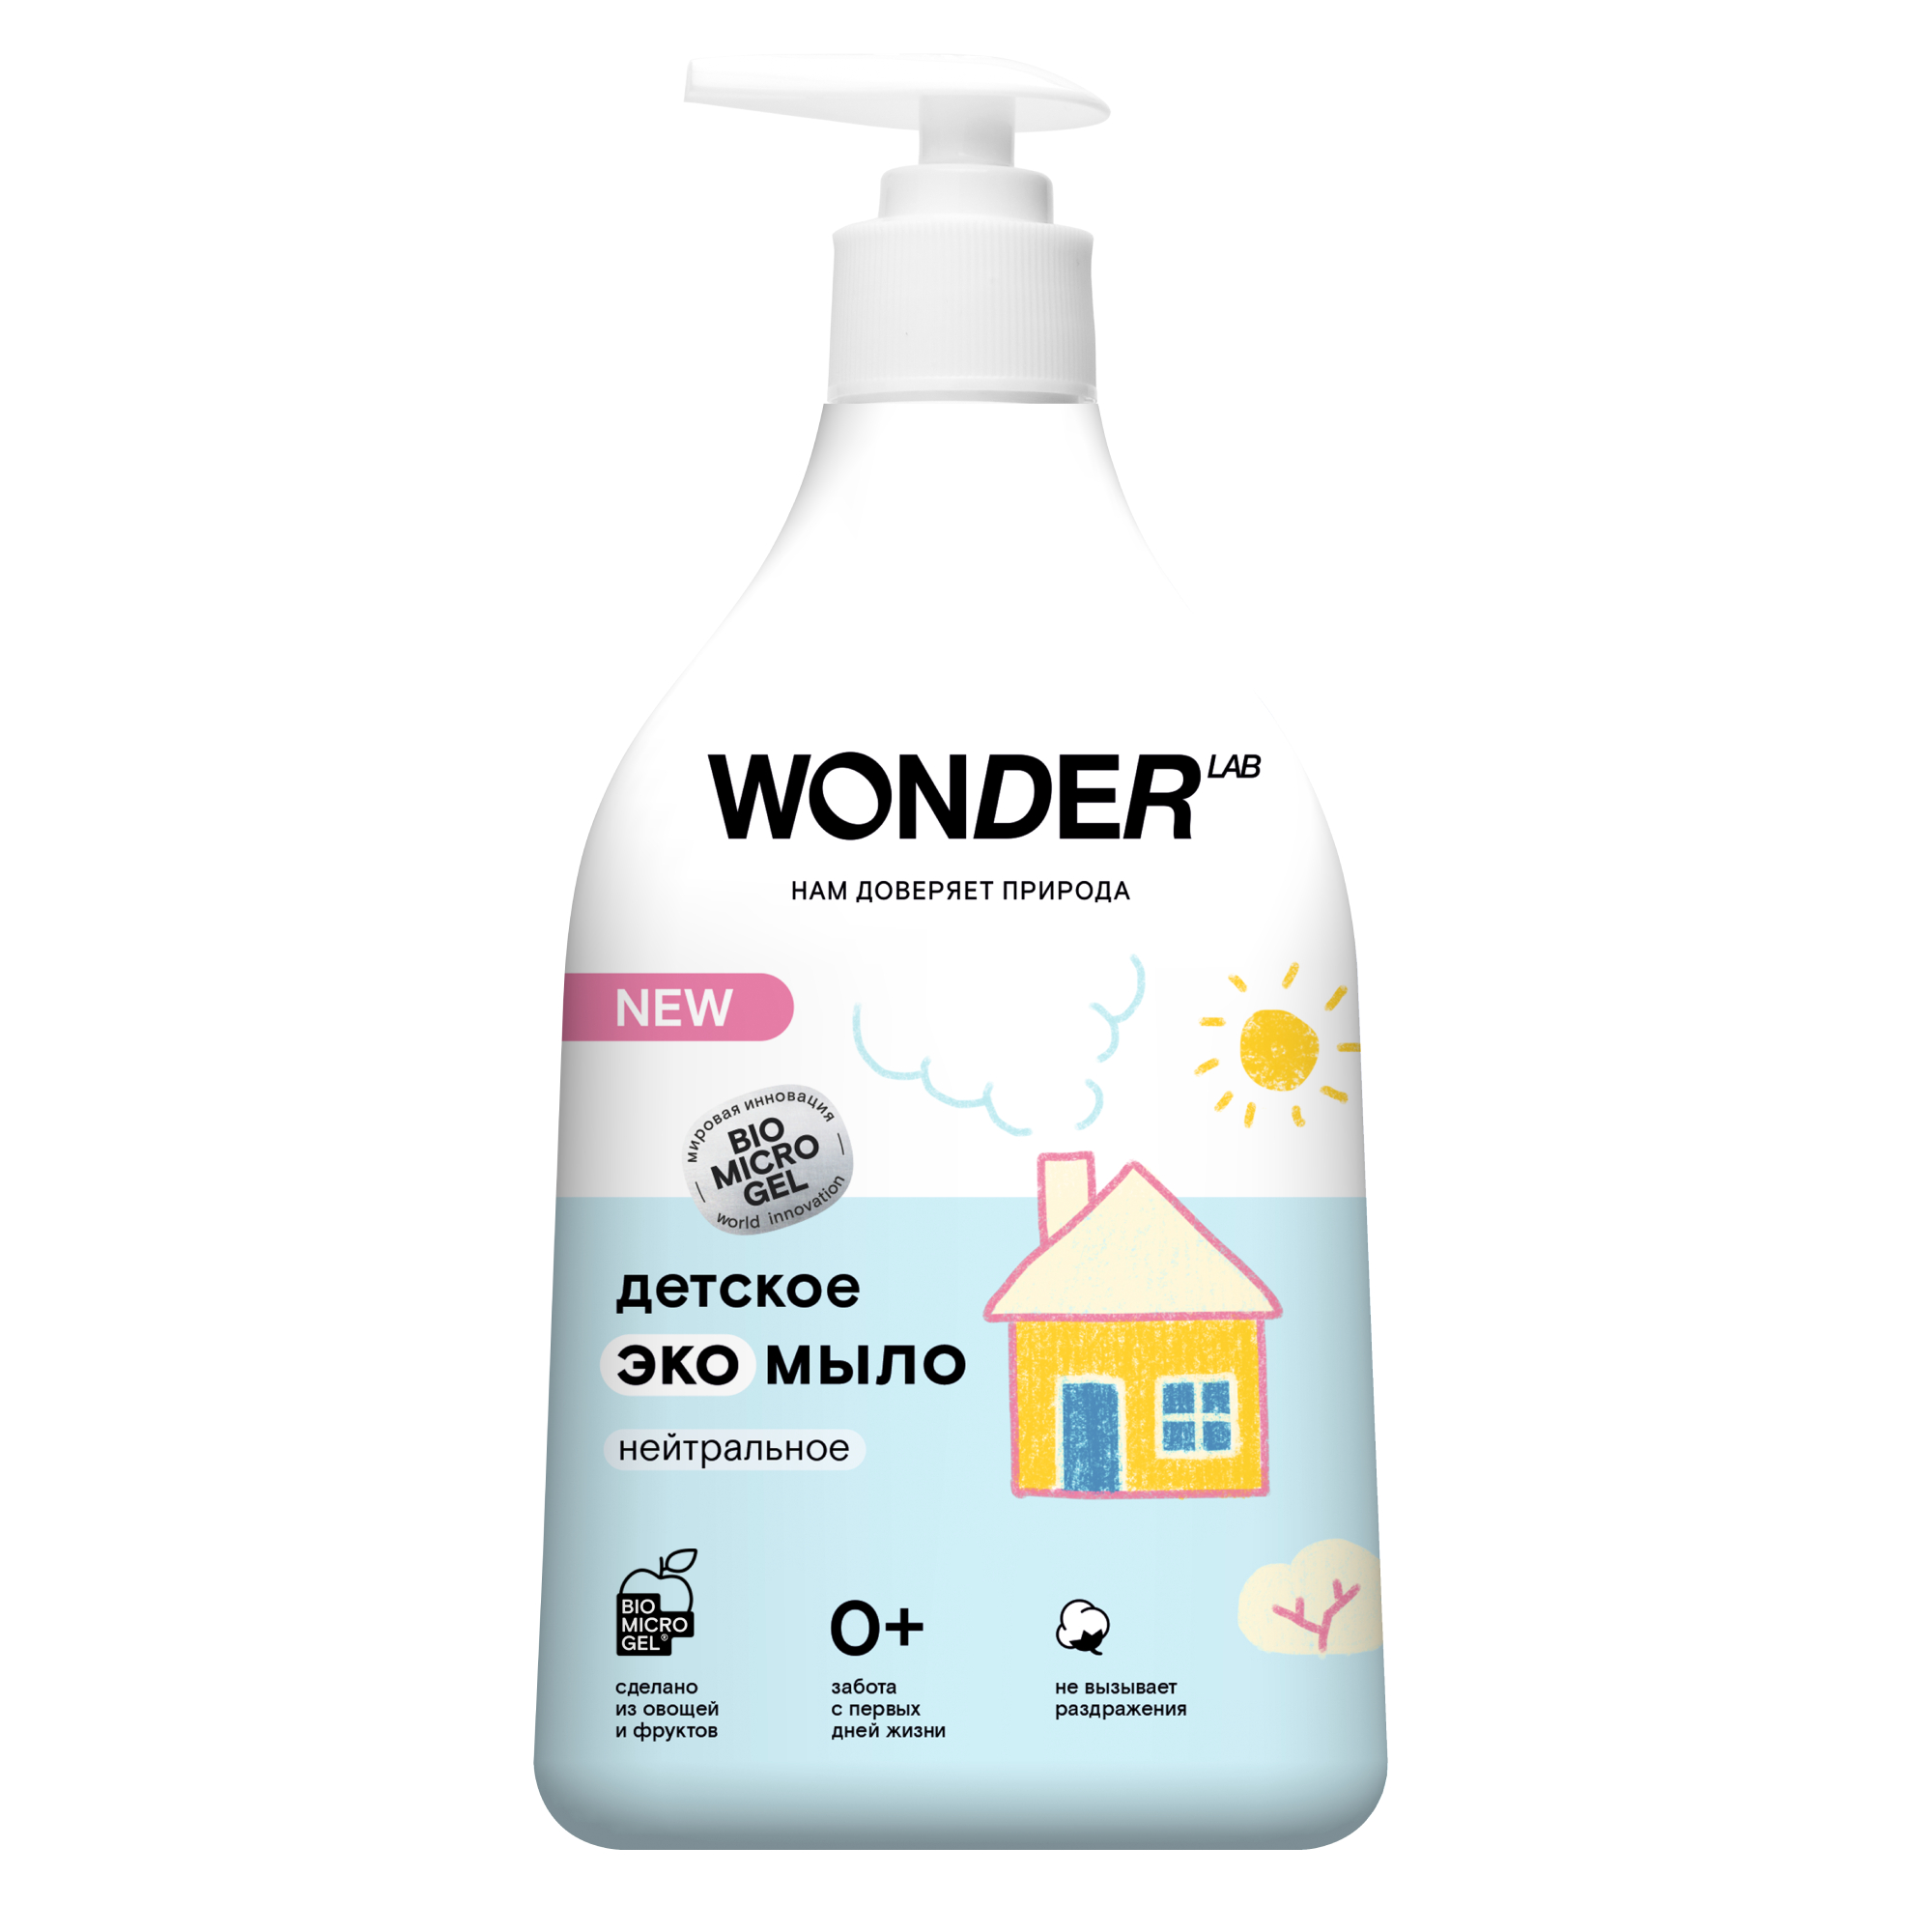 Детское жидкое мыло WONDER LAB, экологичное, без запаха, 540 мл детское жидкое мыло wonder lab экологичное без запаха 540 мл